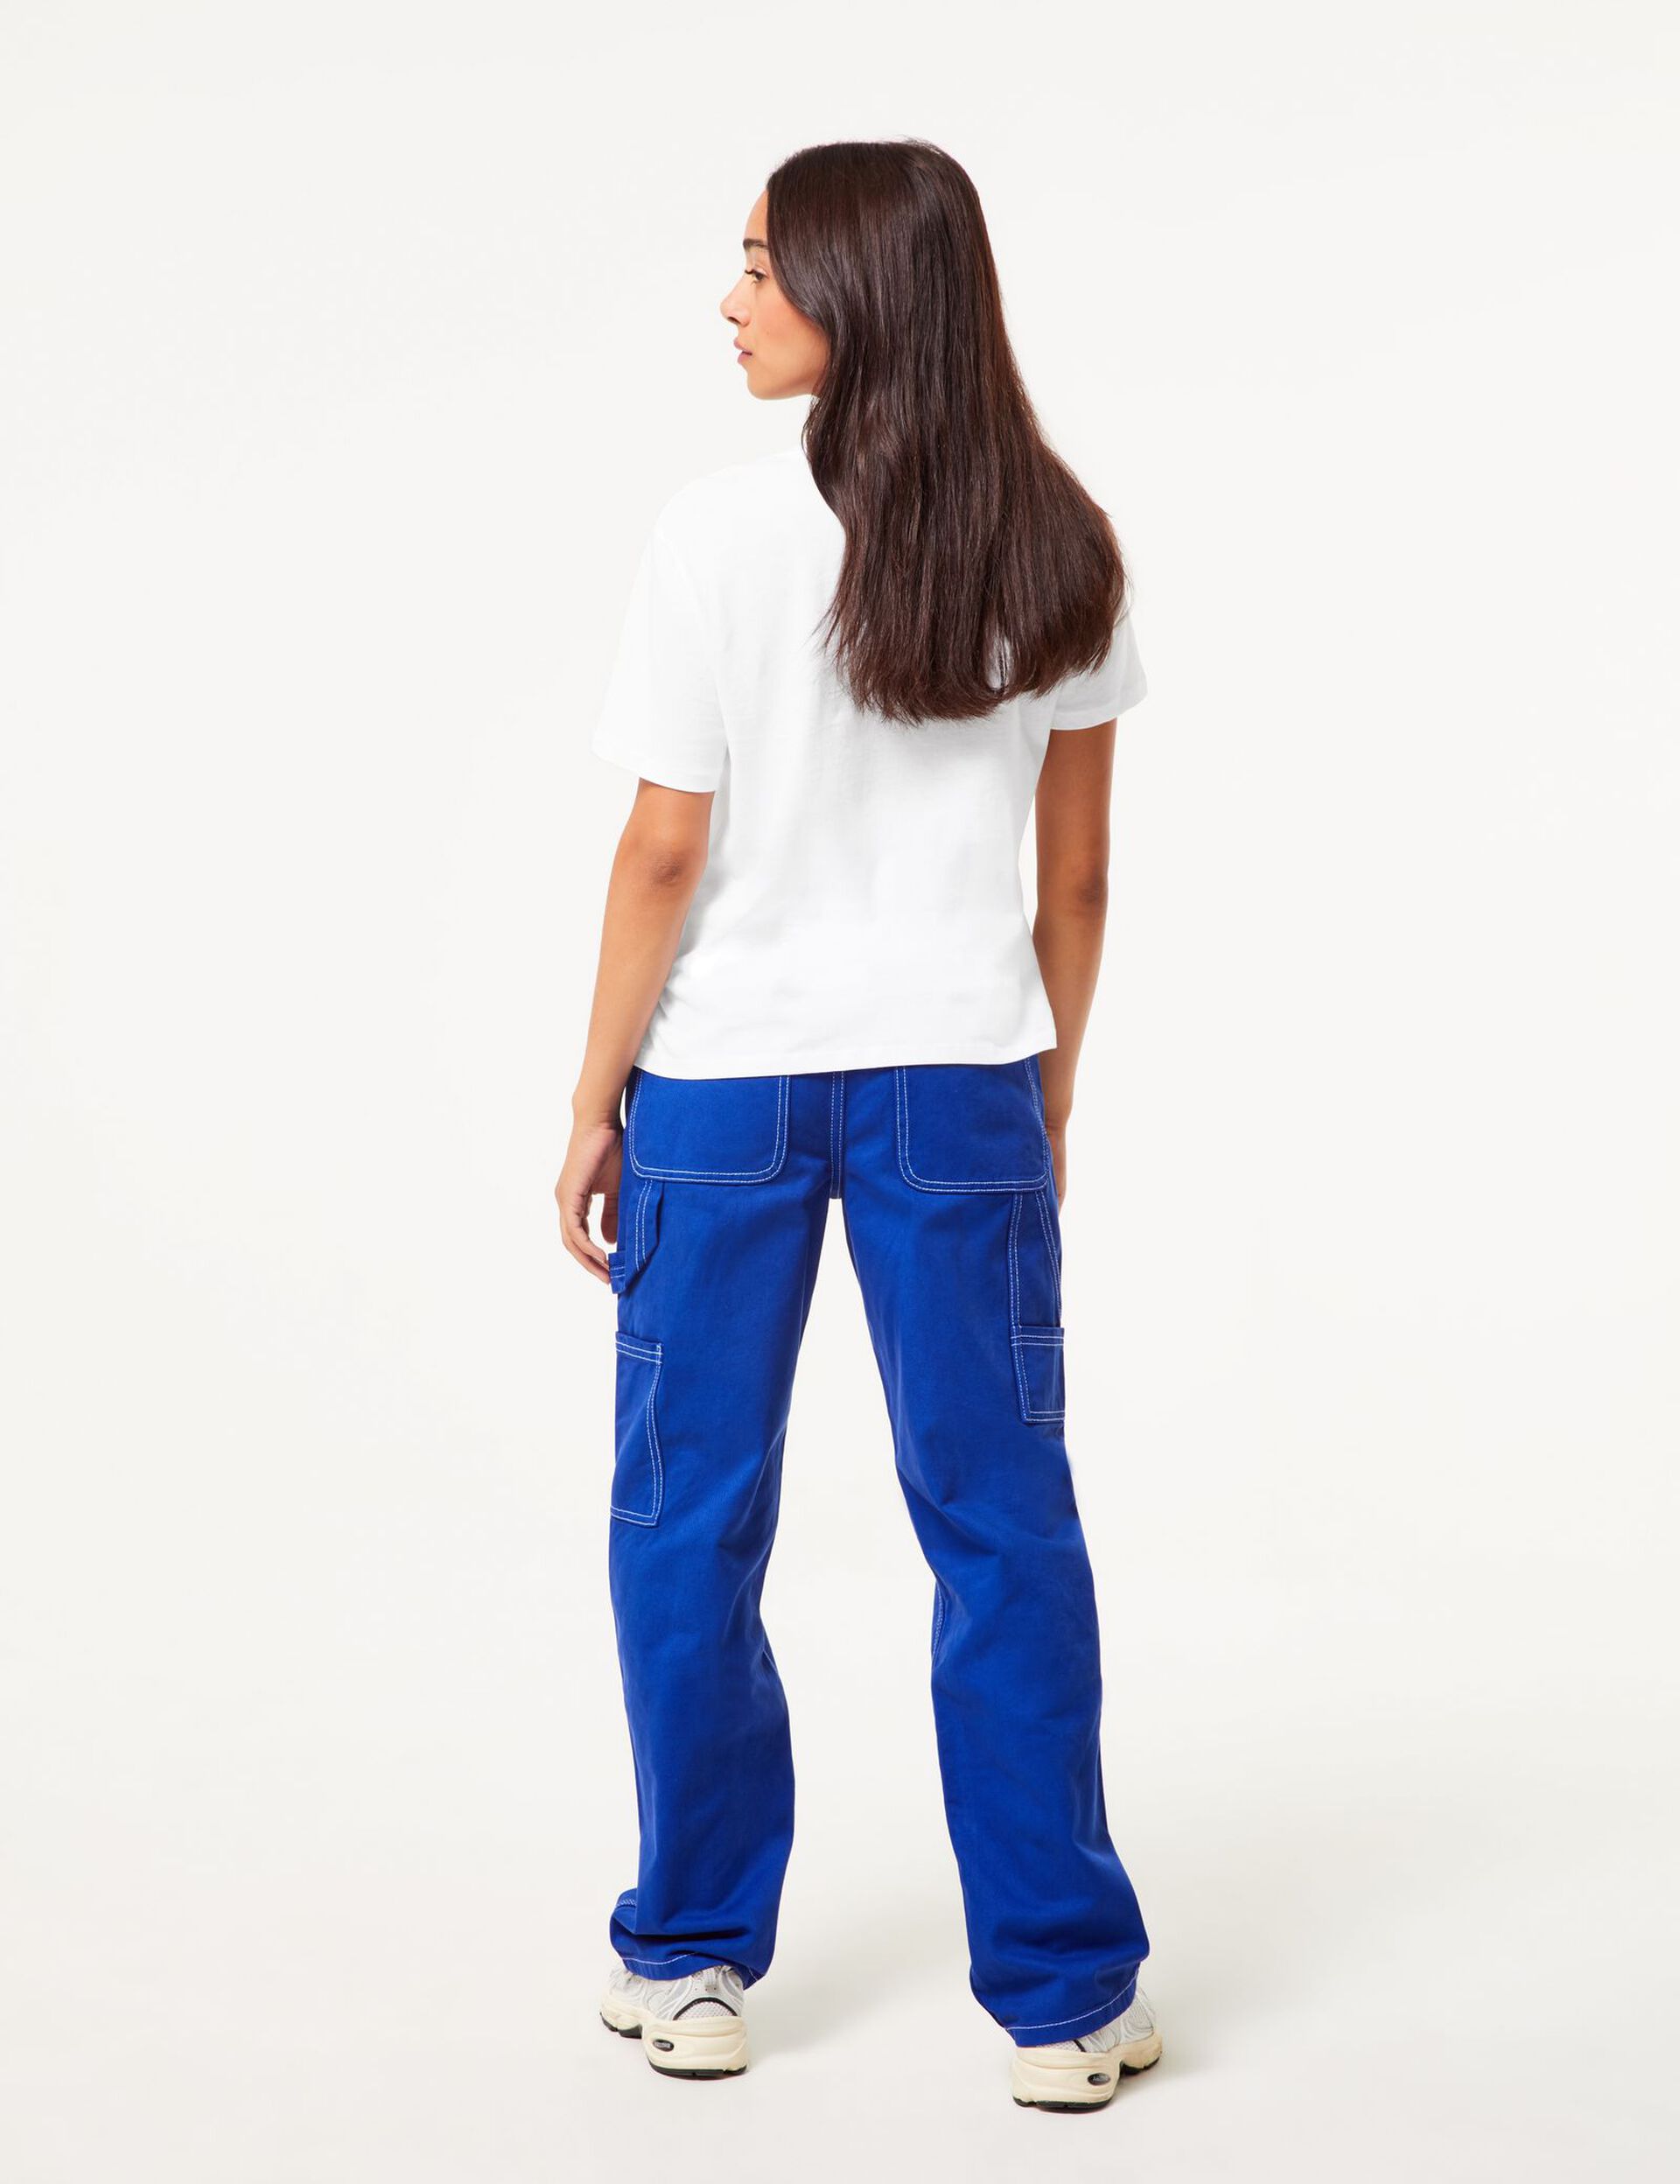 Pantalon carpenter bleu avec surpiqures blanches